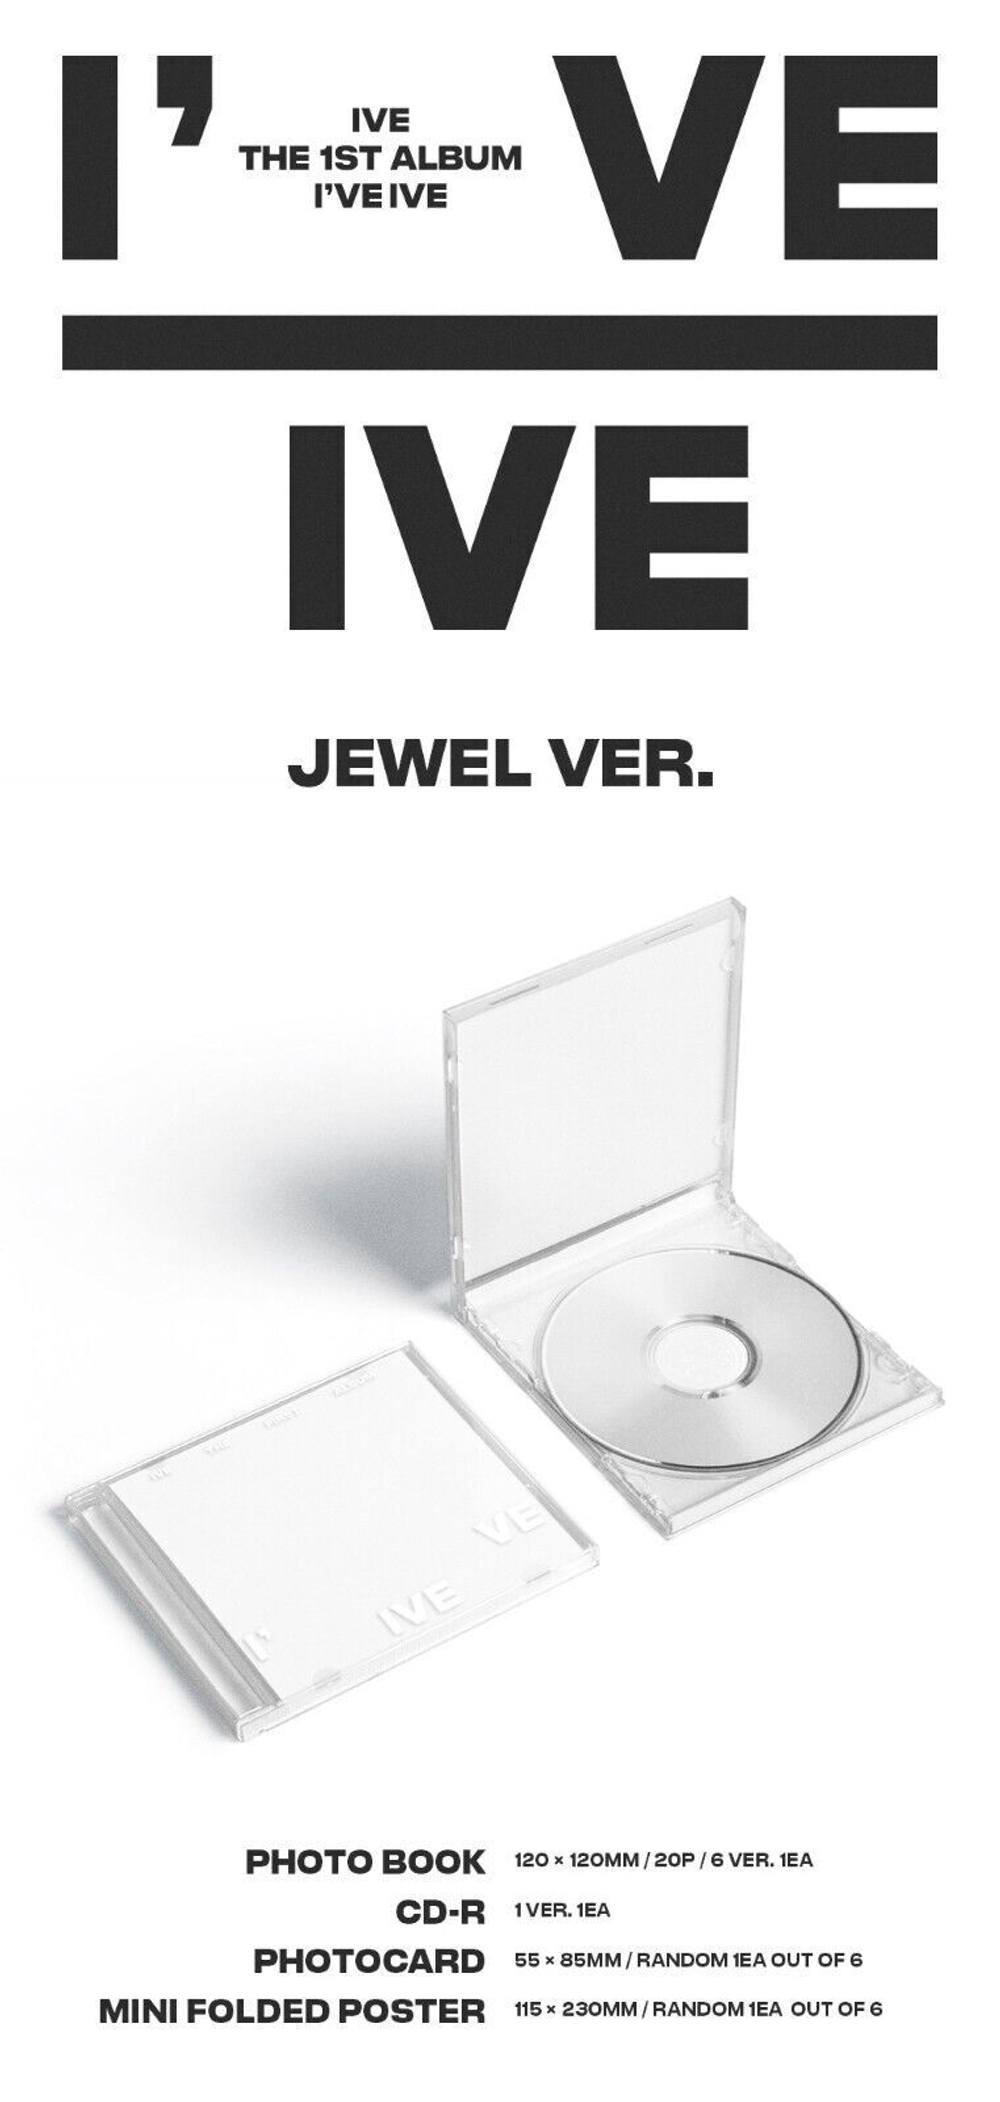 IVE - I've Jewel Case Limited version